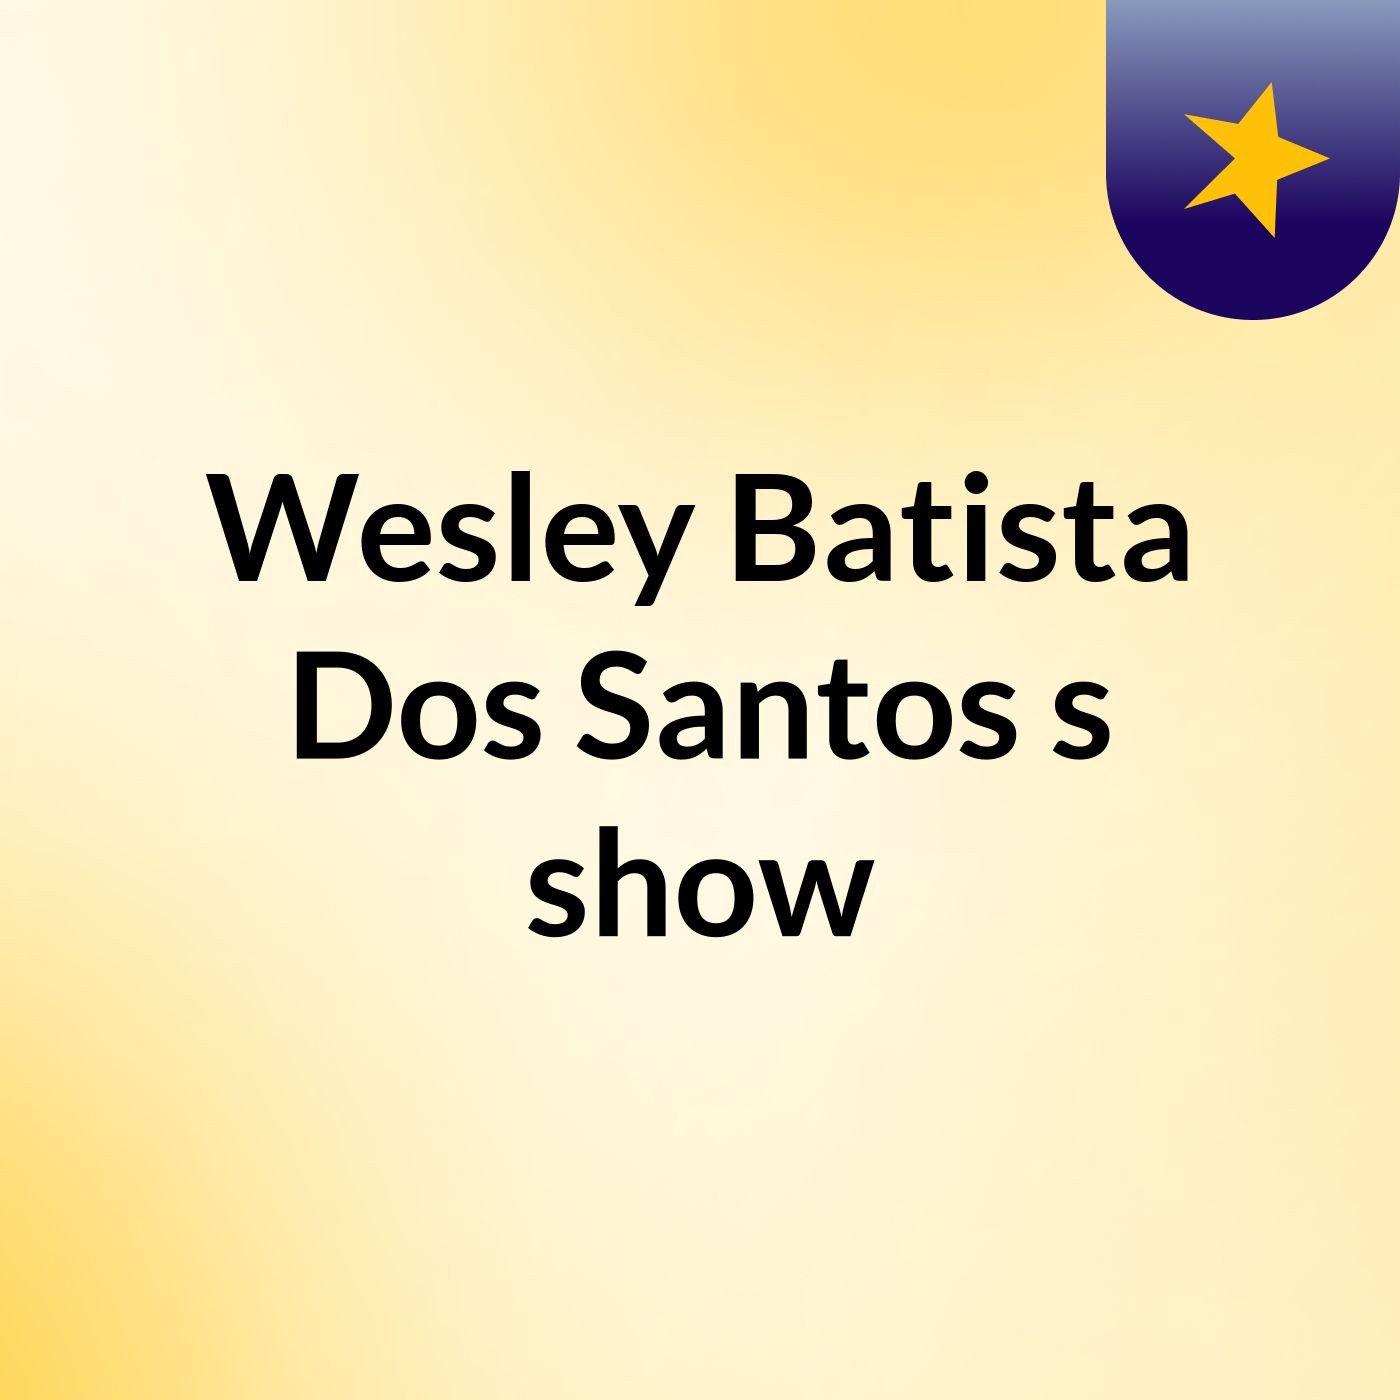 Episódio 18 - Wesley Batista Dos Santos's show